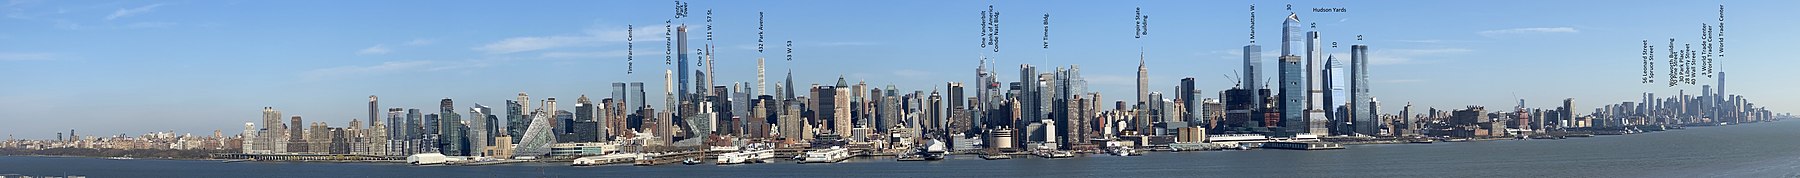 Panorama de la oriella oeste de Manhattan, dende la Cai 115 (115th Street) hasta The Battery, tomada dende Weehawken (Nueva Jersey), en 2020.